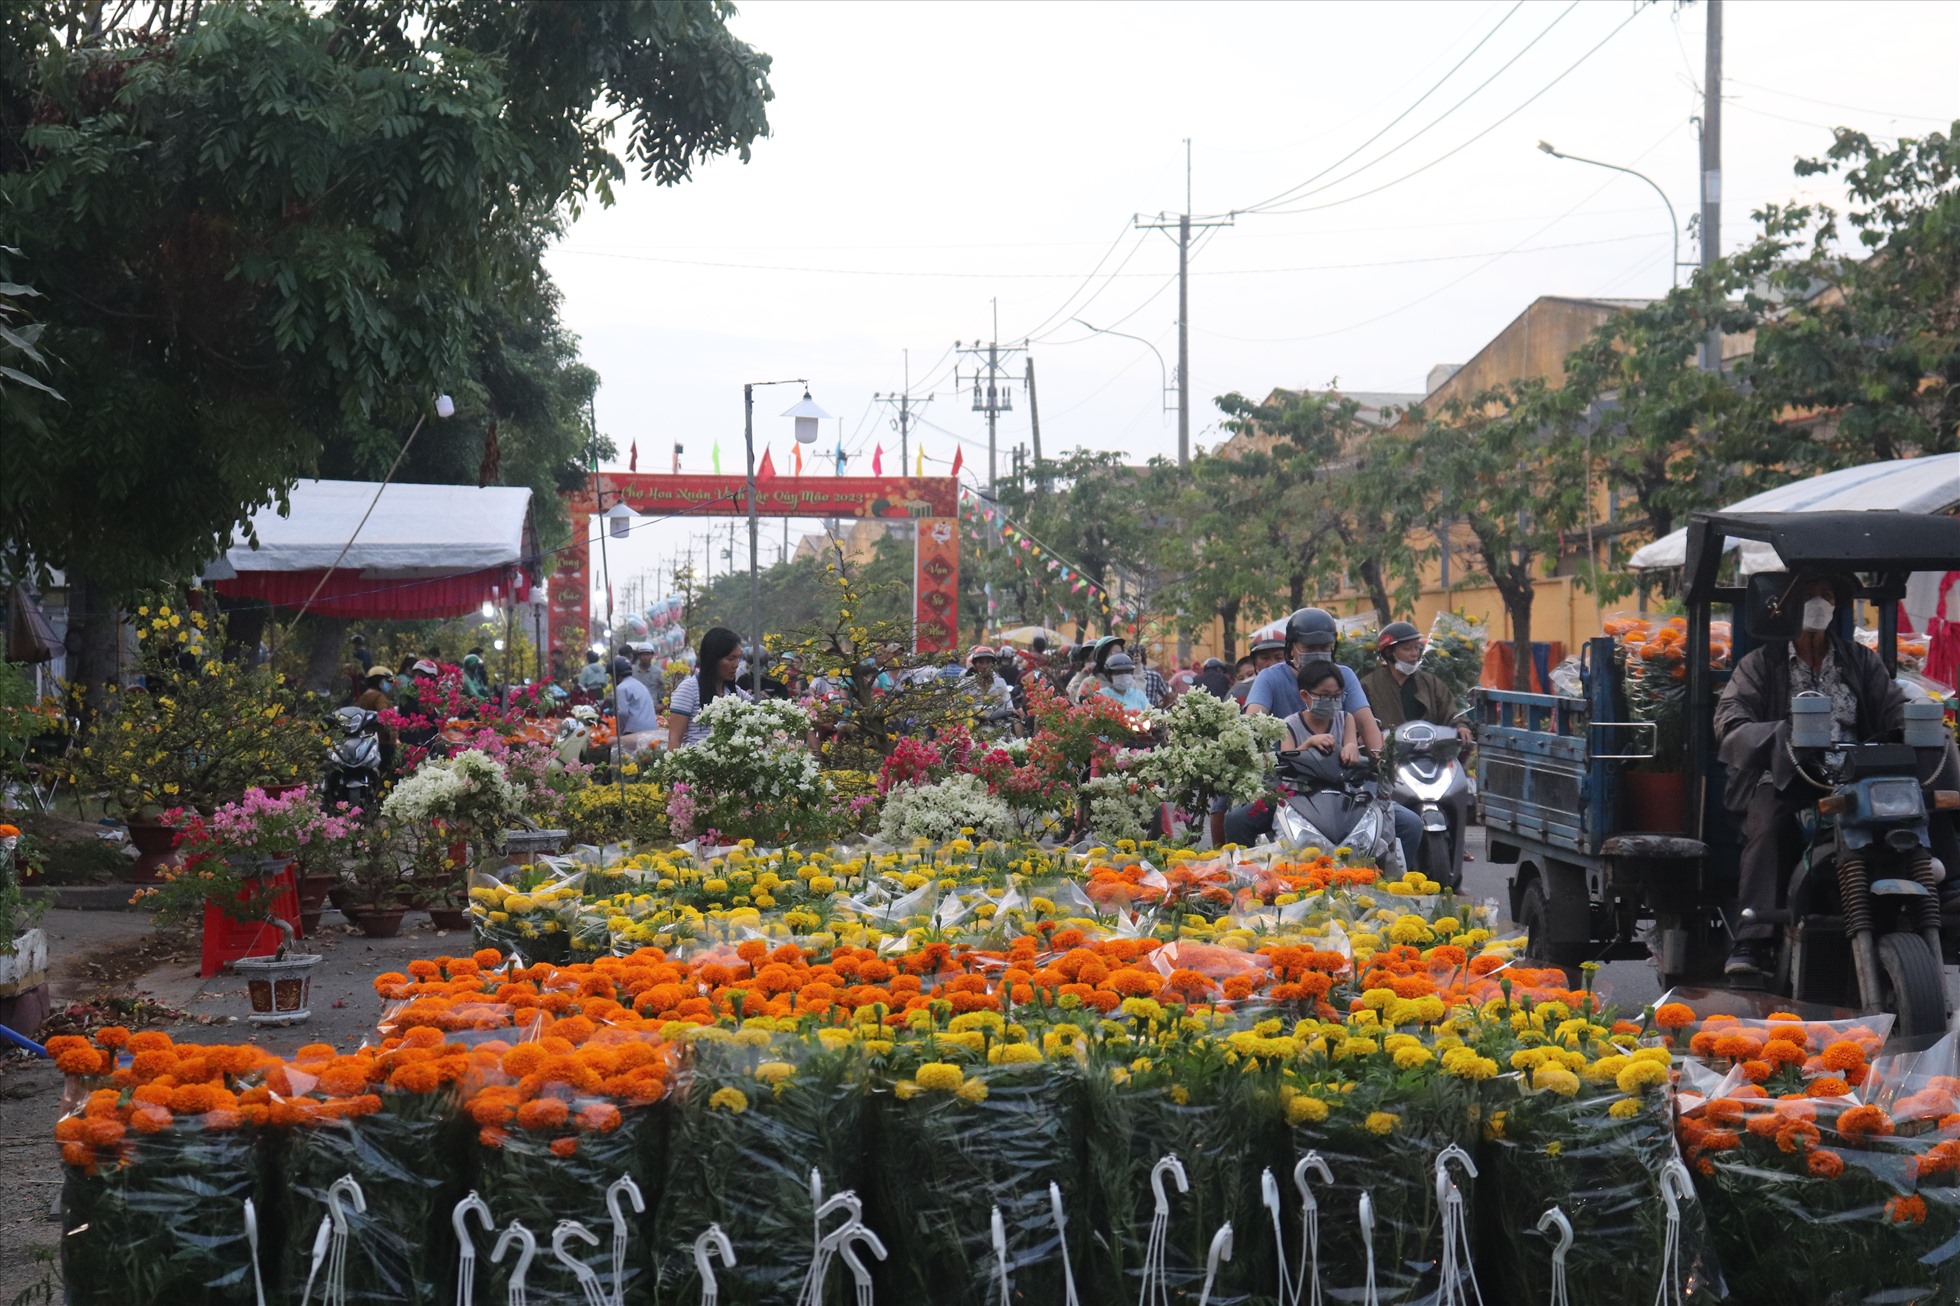 Lượng khách đổ về chợ hoa xuân Vình Lộc chiều 30 Tết rất đông đúc - Ảnh: Ngọc Duy